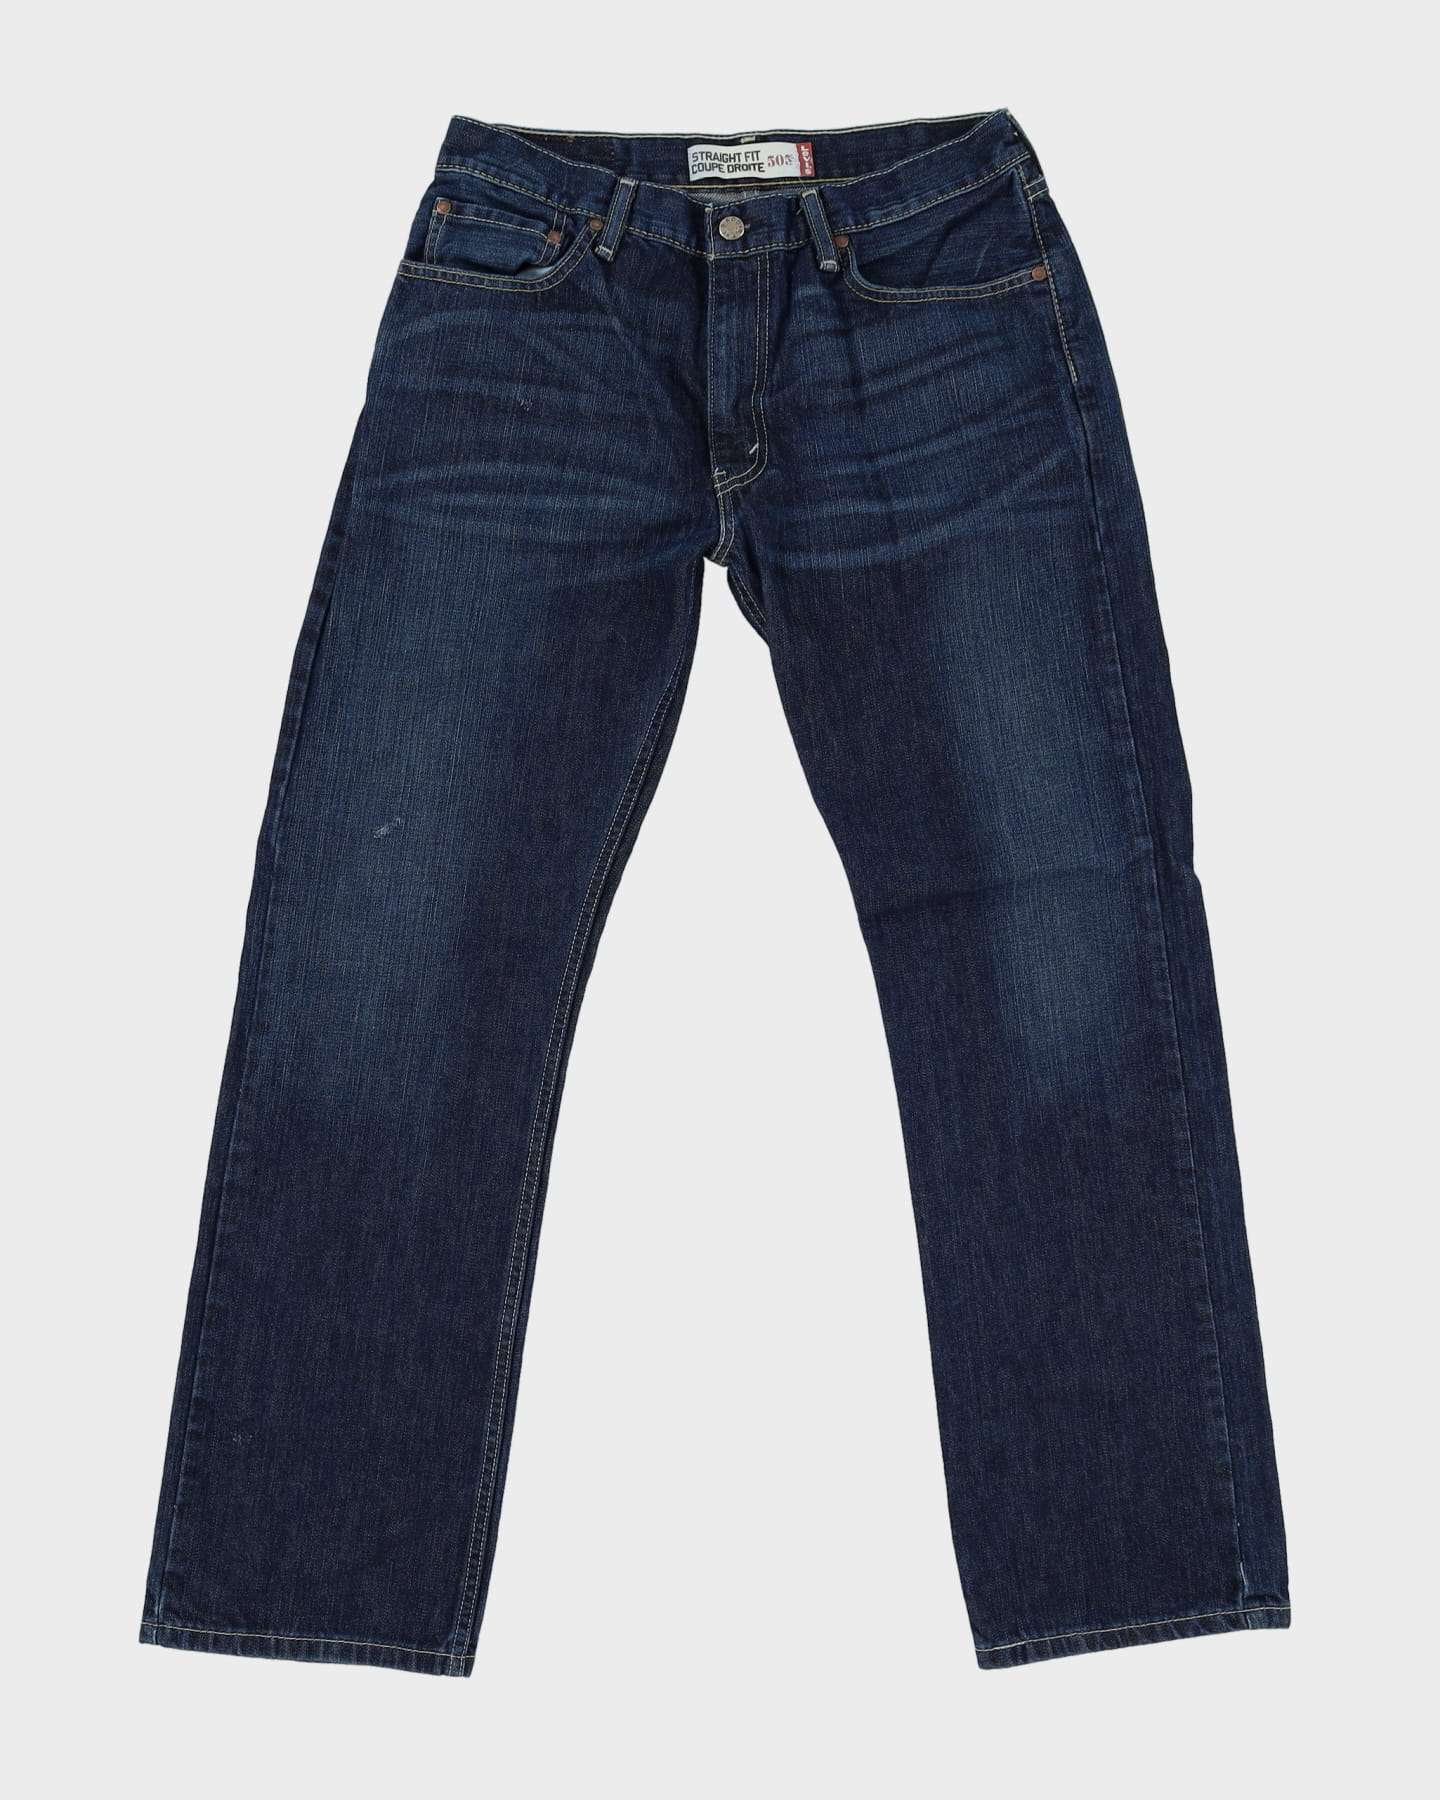 Levi's 505 Blue Jeans - W33 L31